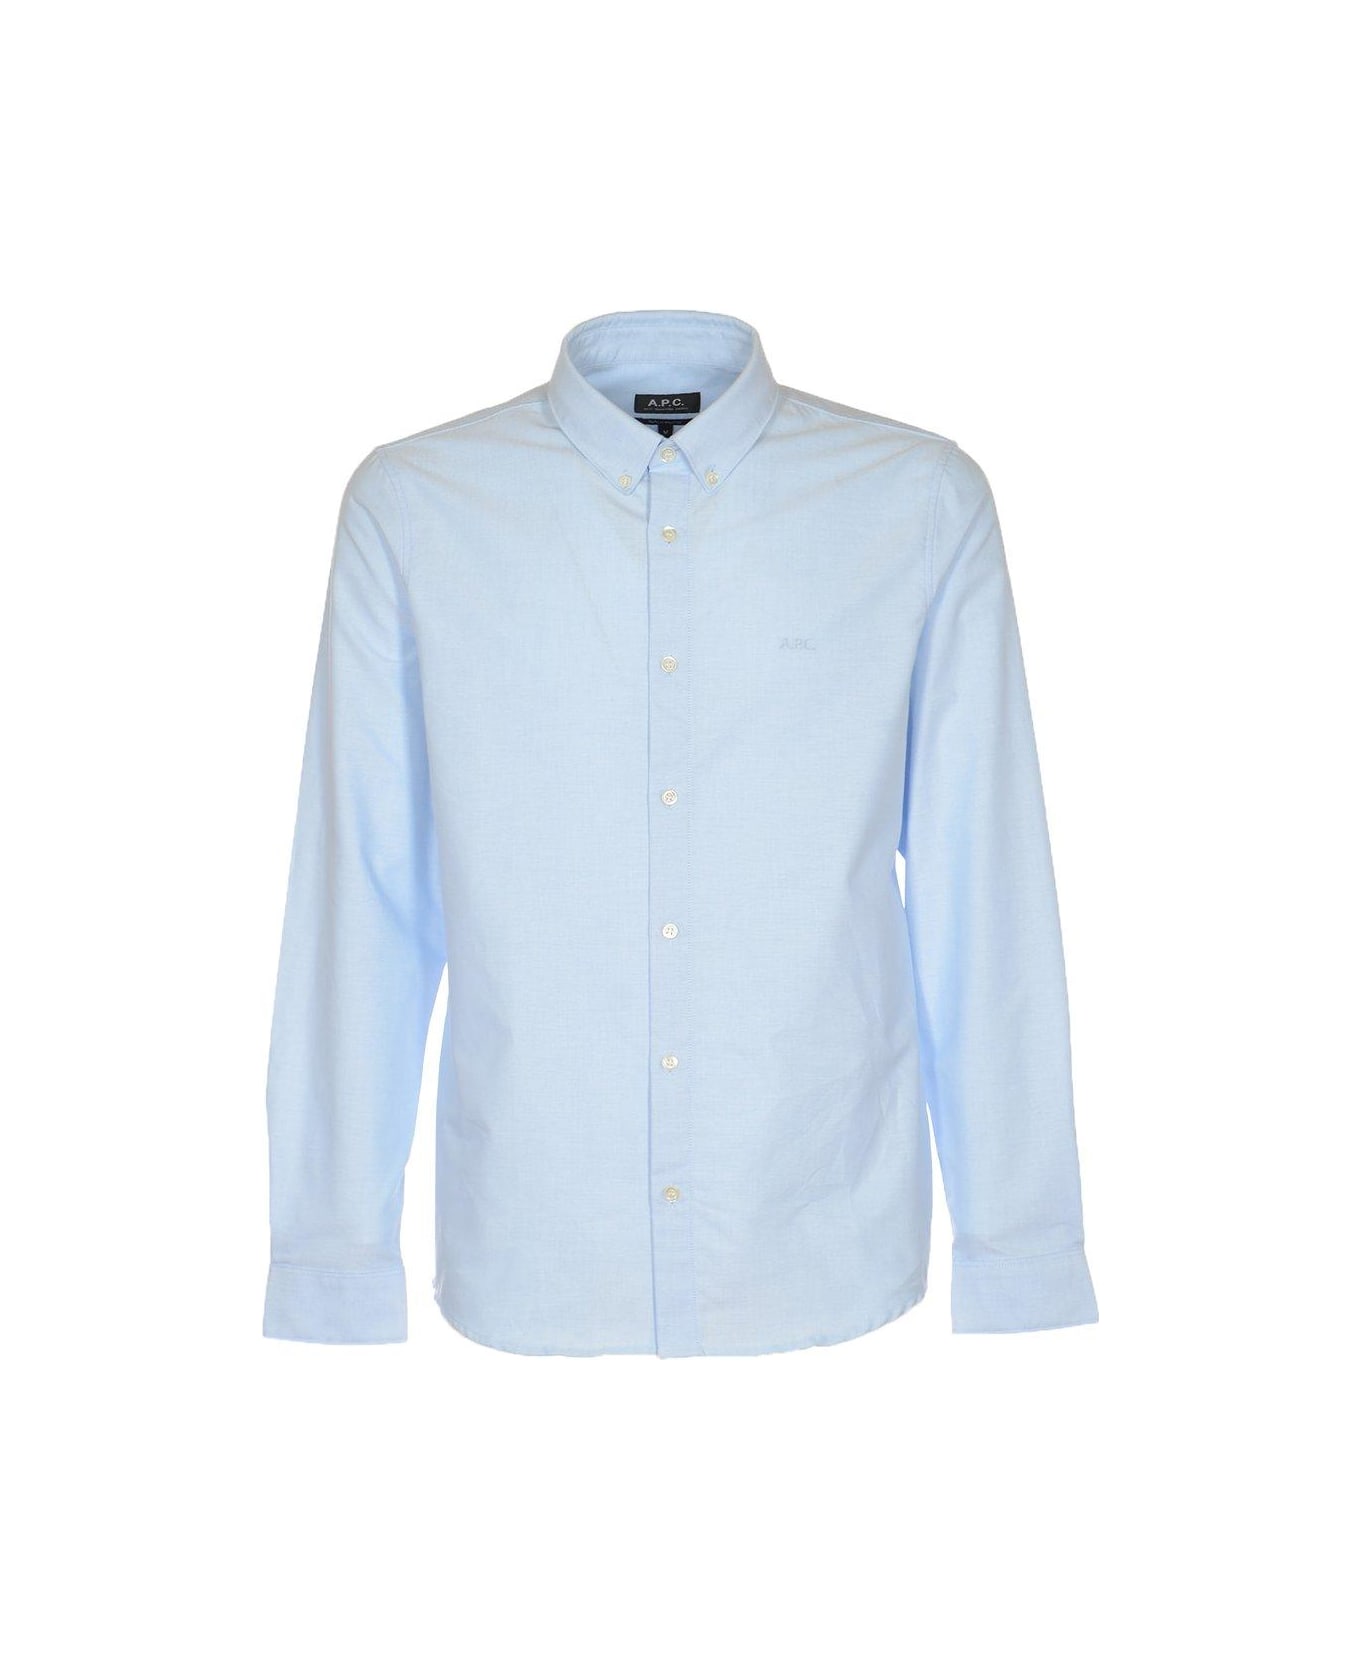 A.P.C. Buttoned Long-sleeved Shirt - Light Blue